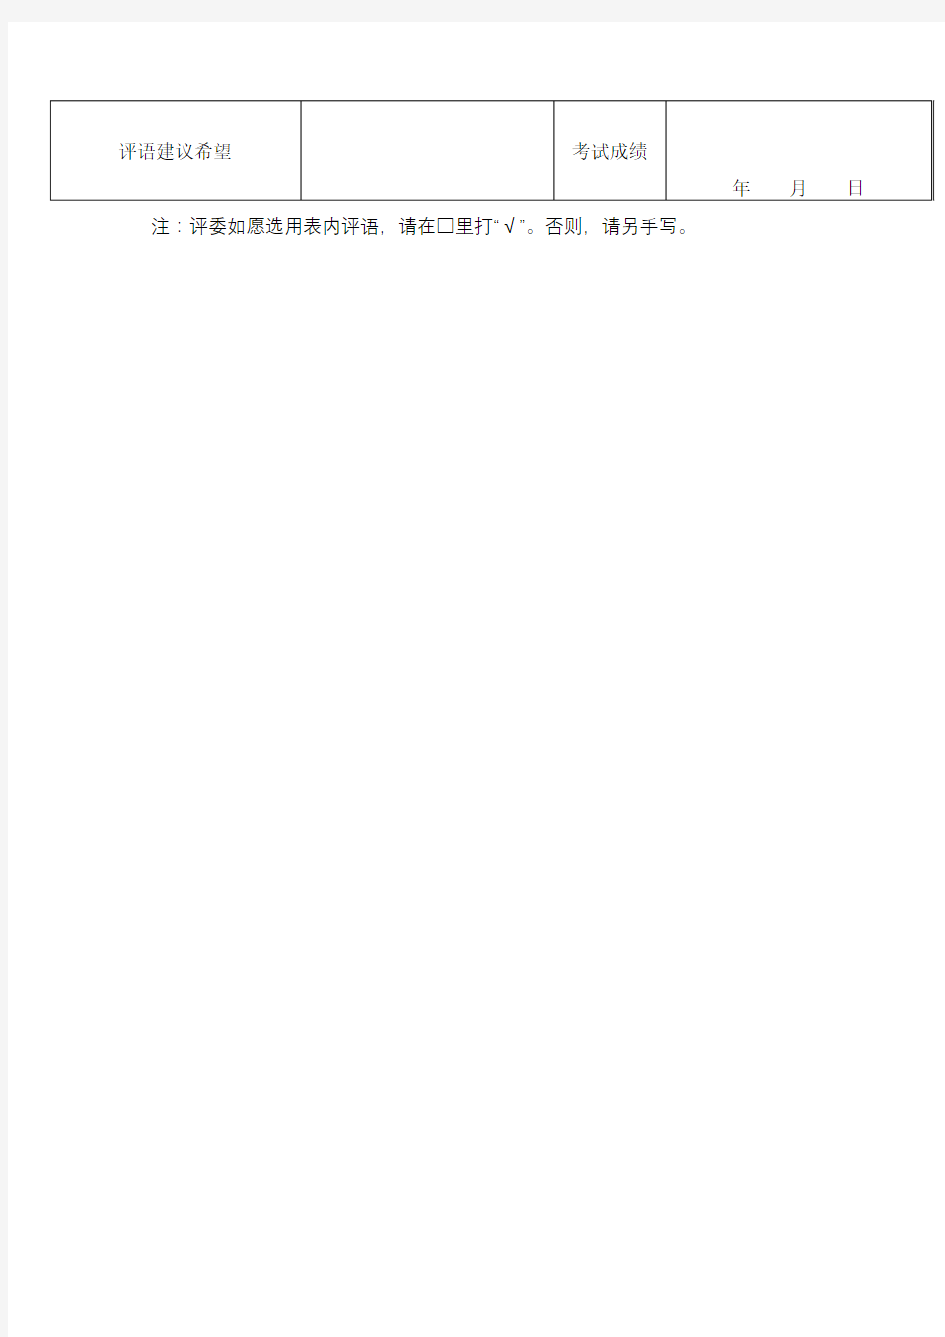 中国音乐教育协会考级中心考级报名表【模板】